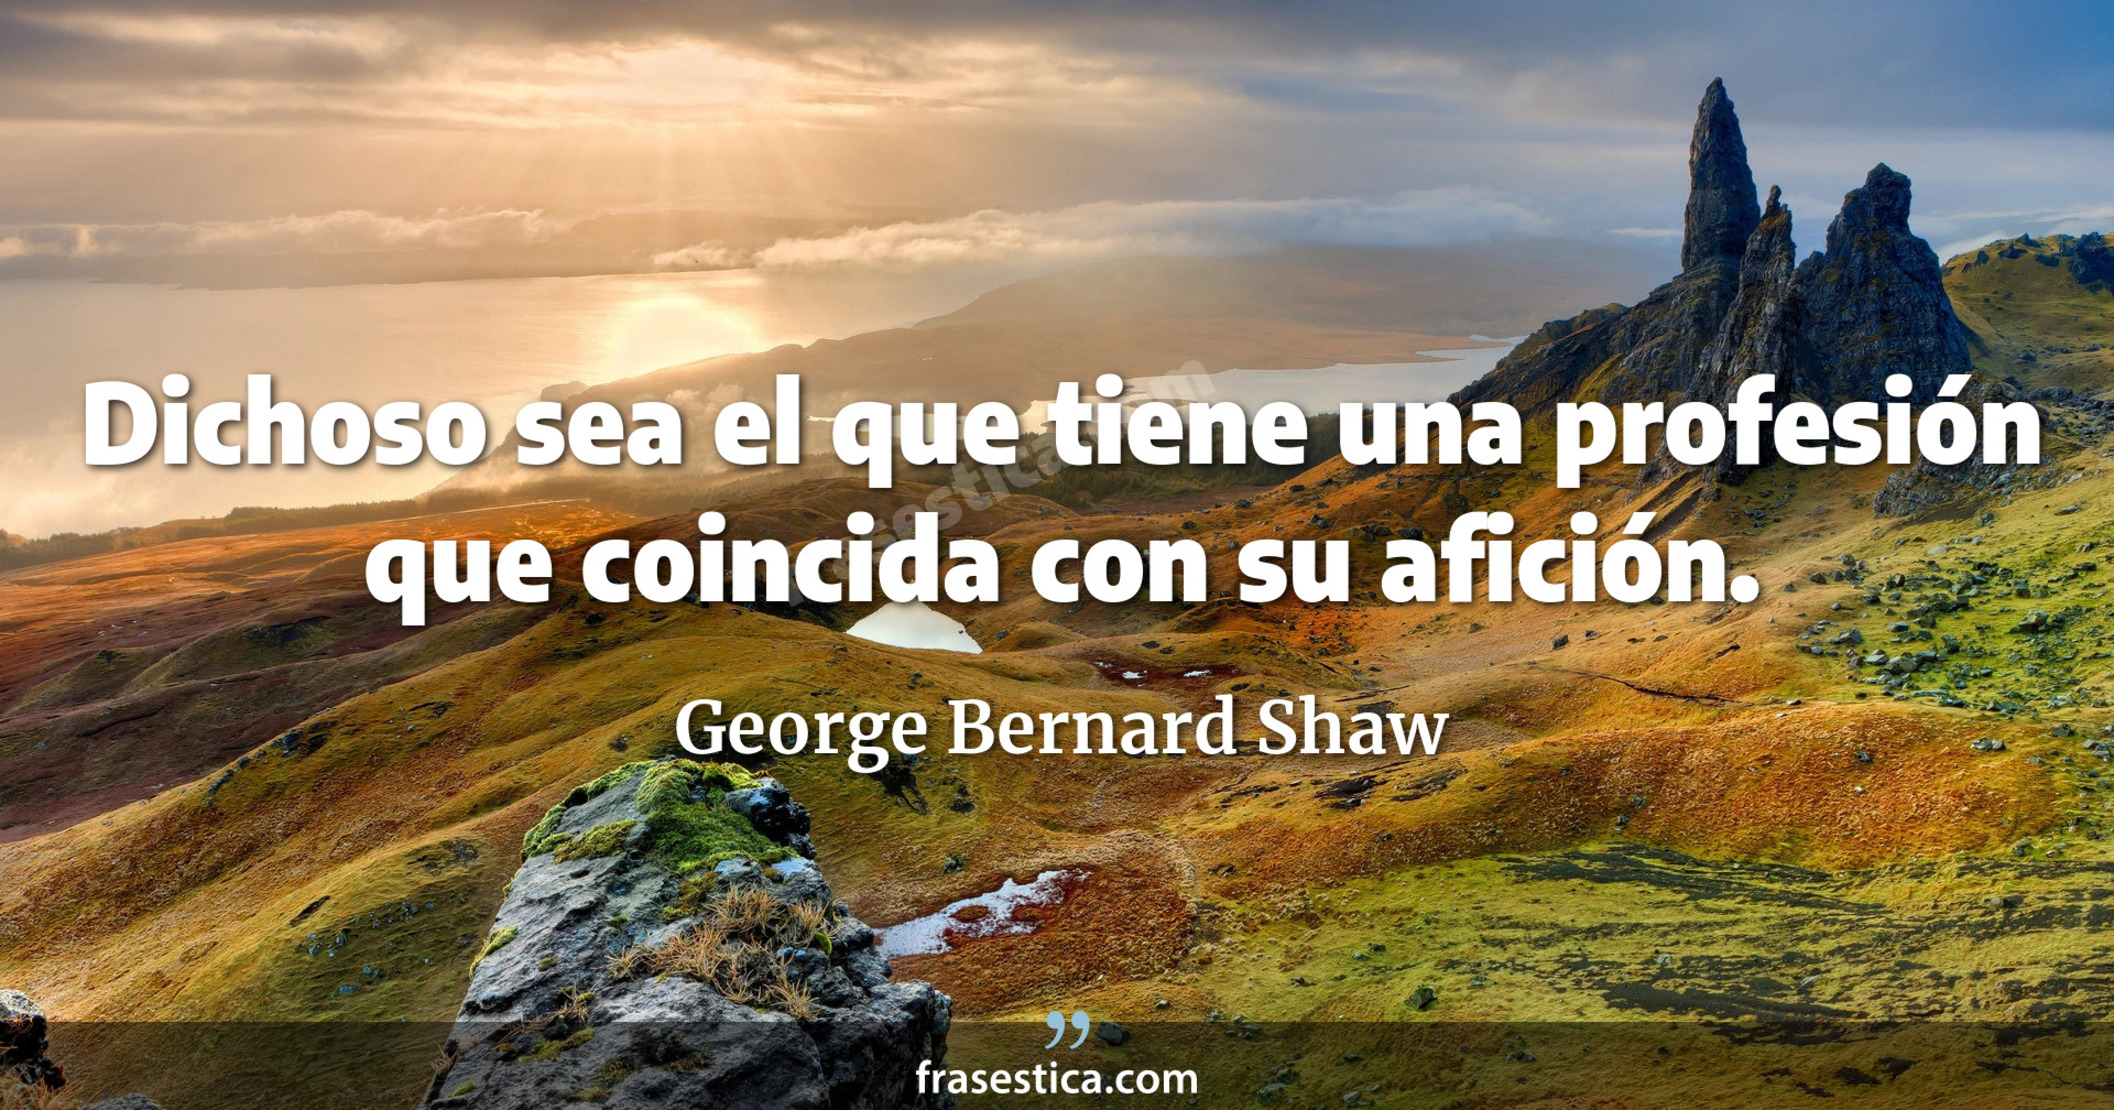 Dichoso sea el que tiene una profesión que coincida con su afición. - George Bernard Shaw